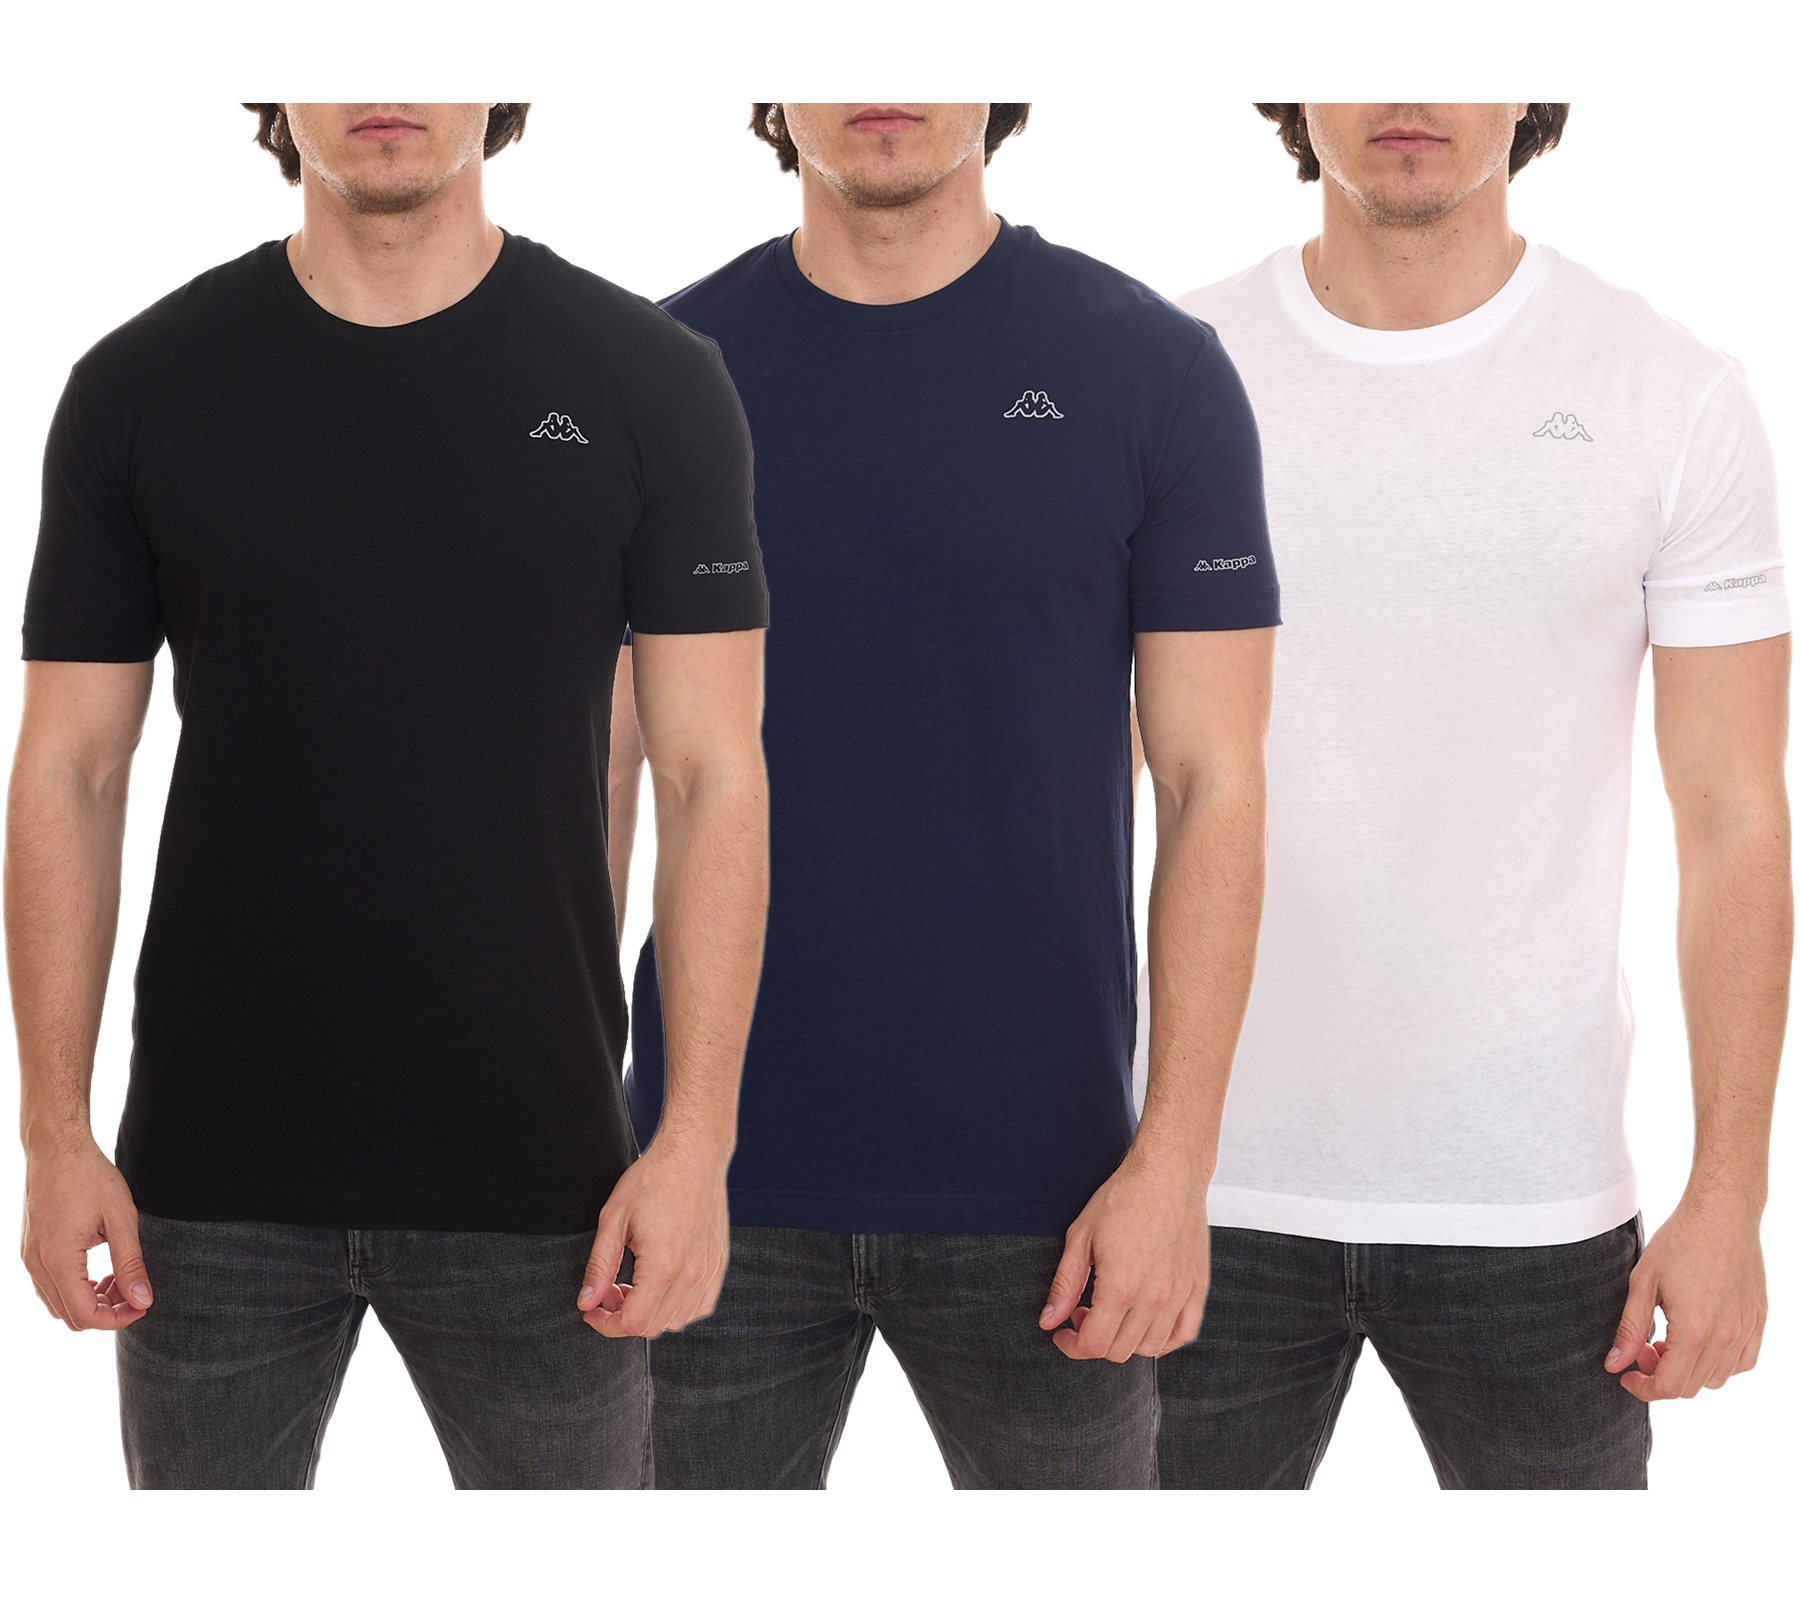 Kappa Herren Baumwoll-Shirt Rundhals-Shirt mit kleinem Logo-Patch Kurzarm-Shirt 711169 Weiß, Blau oder Schwarz von Kappa